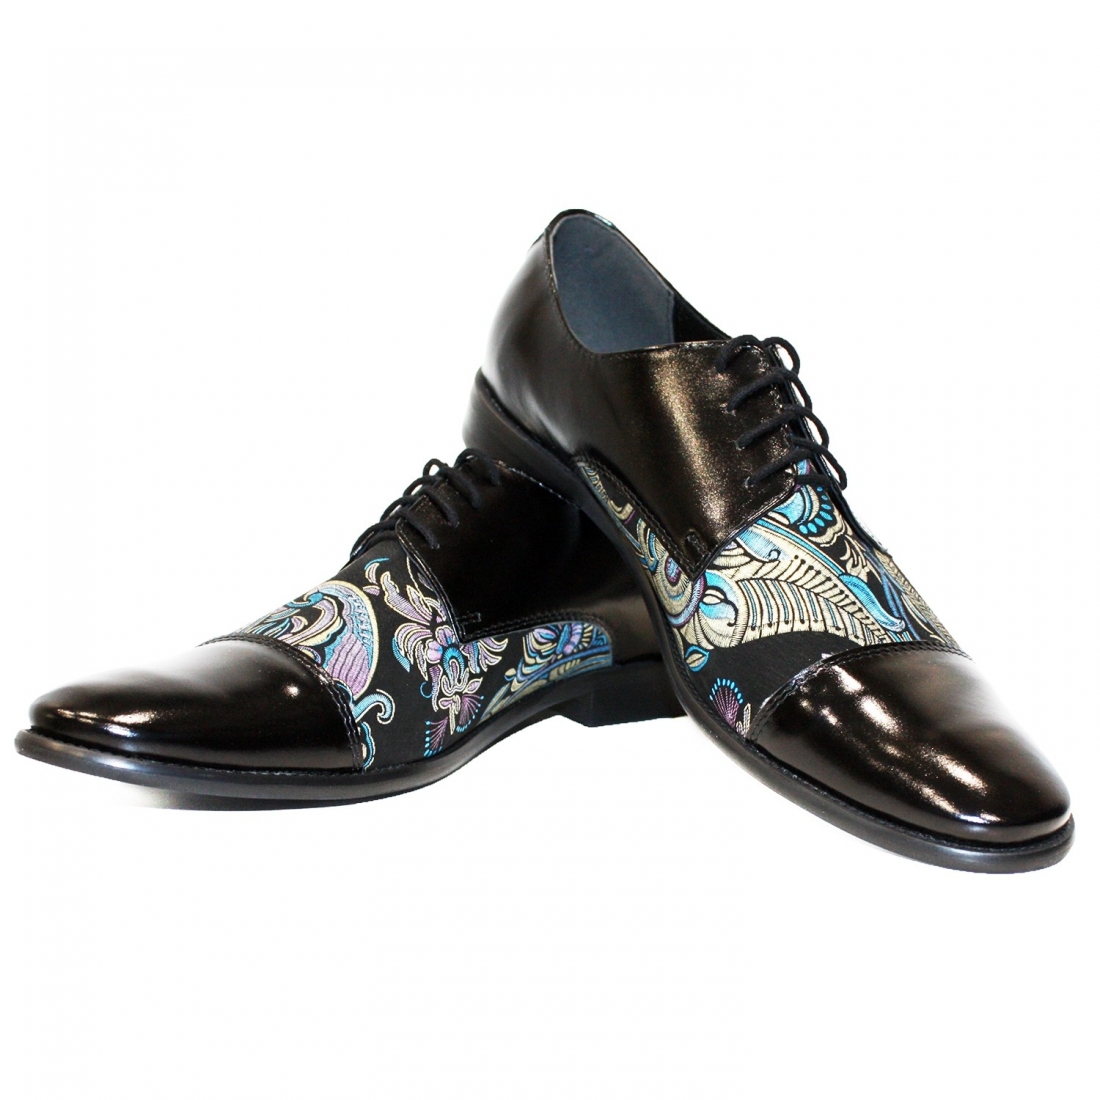 Modello Ulerro - Schnürer - Handmade Colorful Italian Leather Shoes